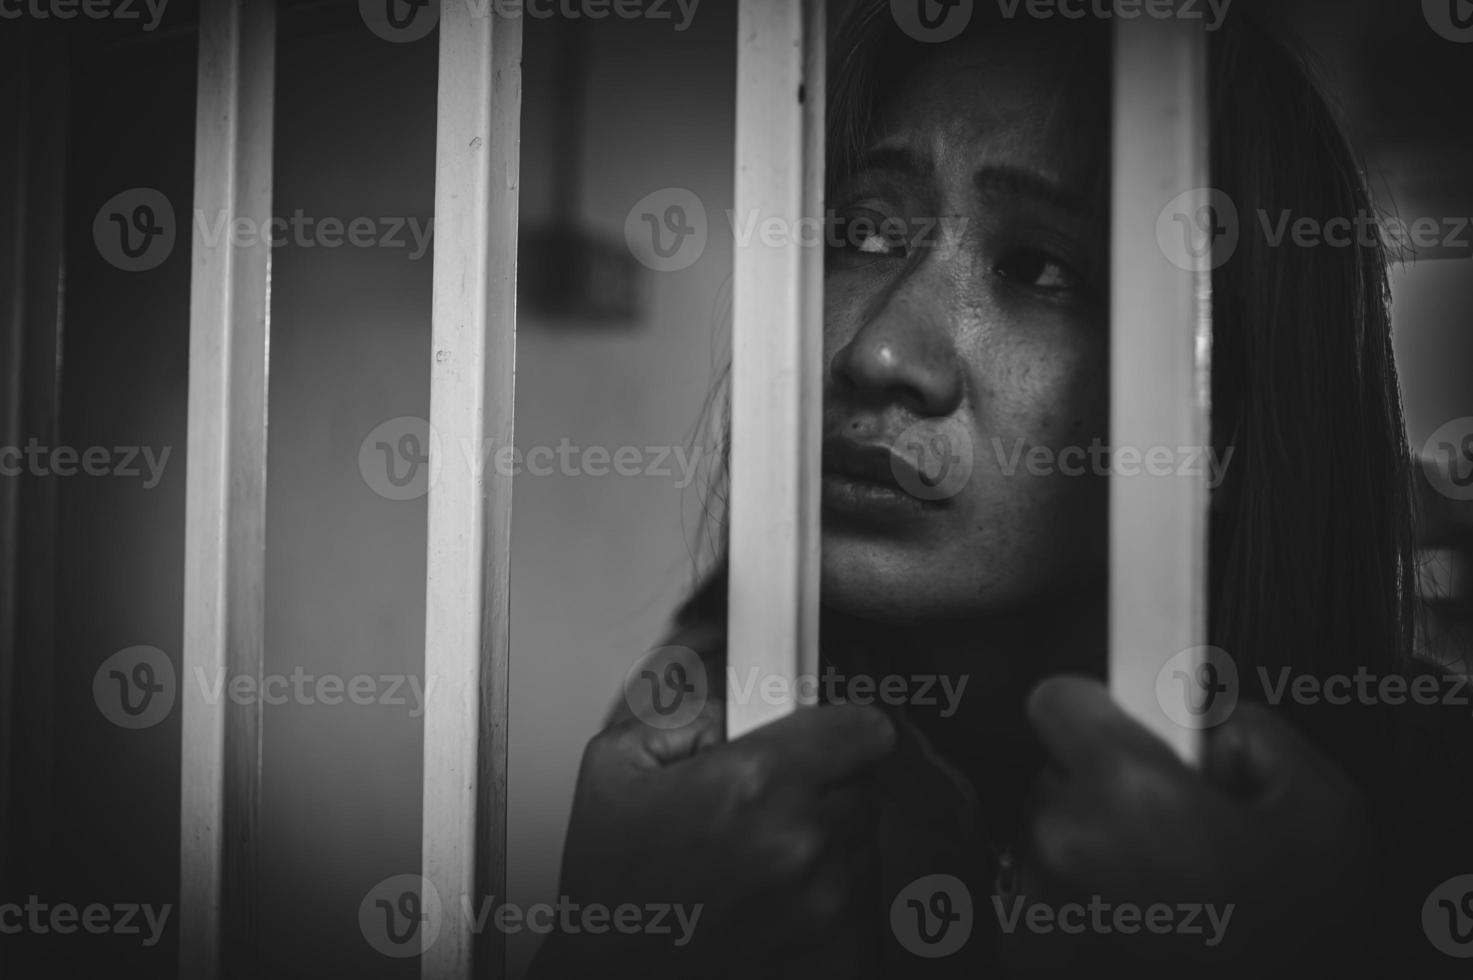 handen van Dames ten einde raad naar vangst de ijzer gevangenis, gevangene concept, thailand mensen, hoop naar worden gratis, als de schenden de wet zou worden gearresteerd en gevangen gezet. foto